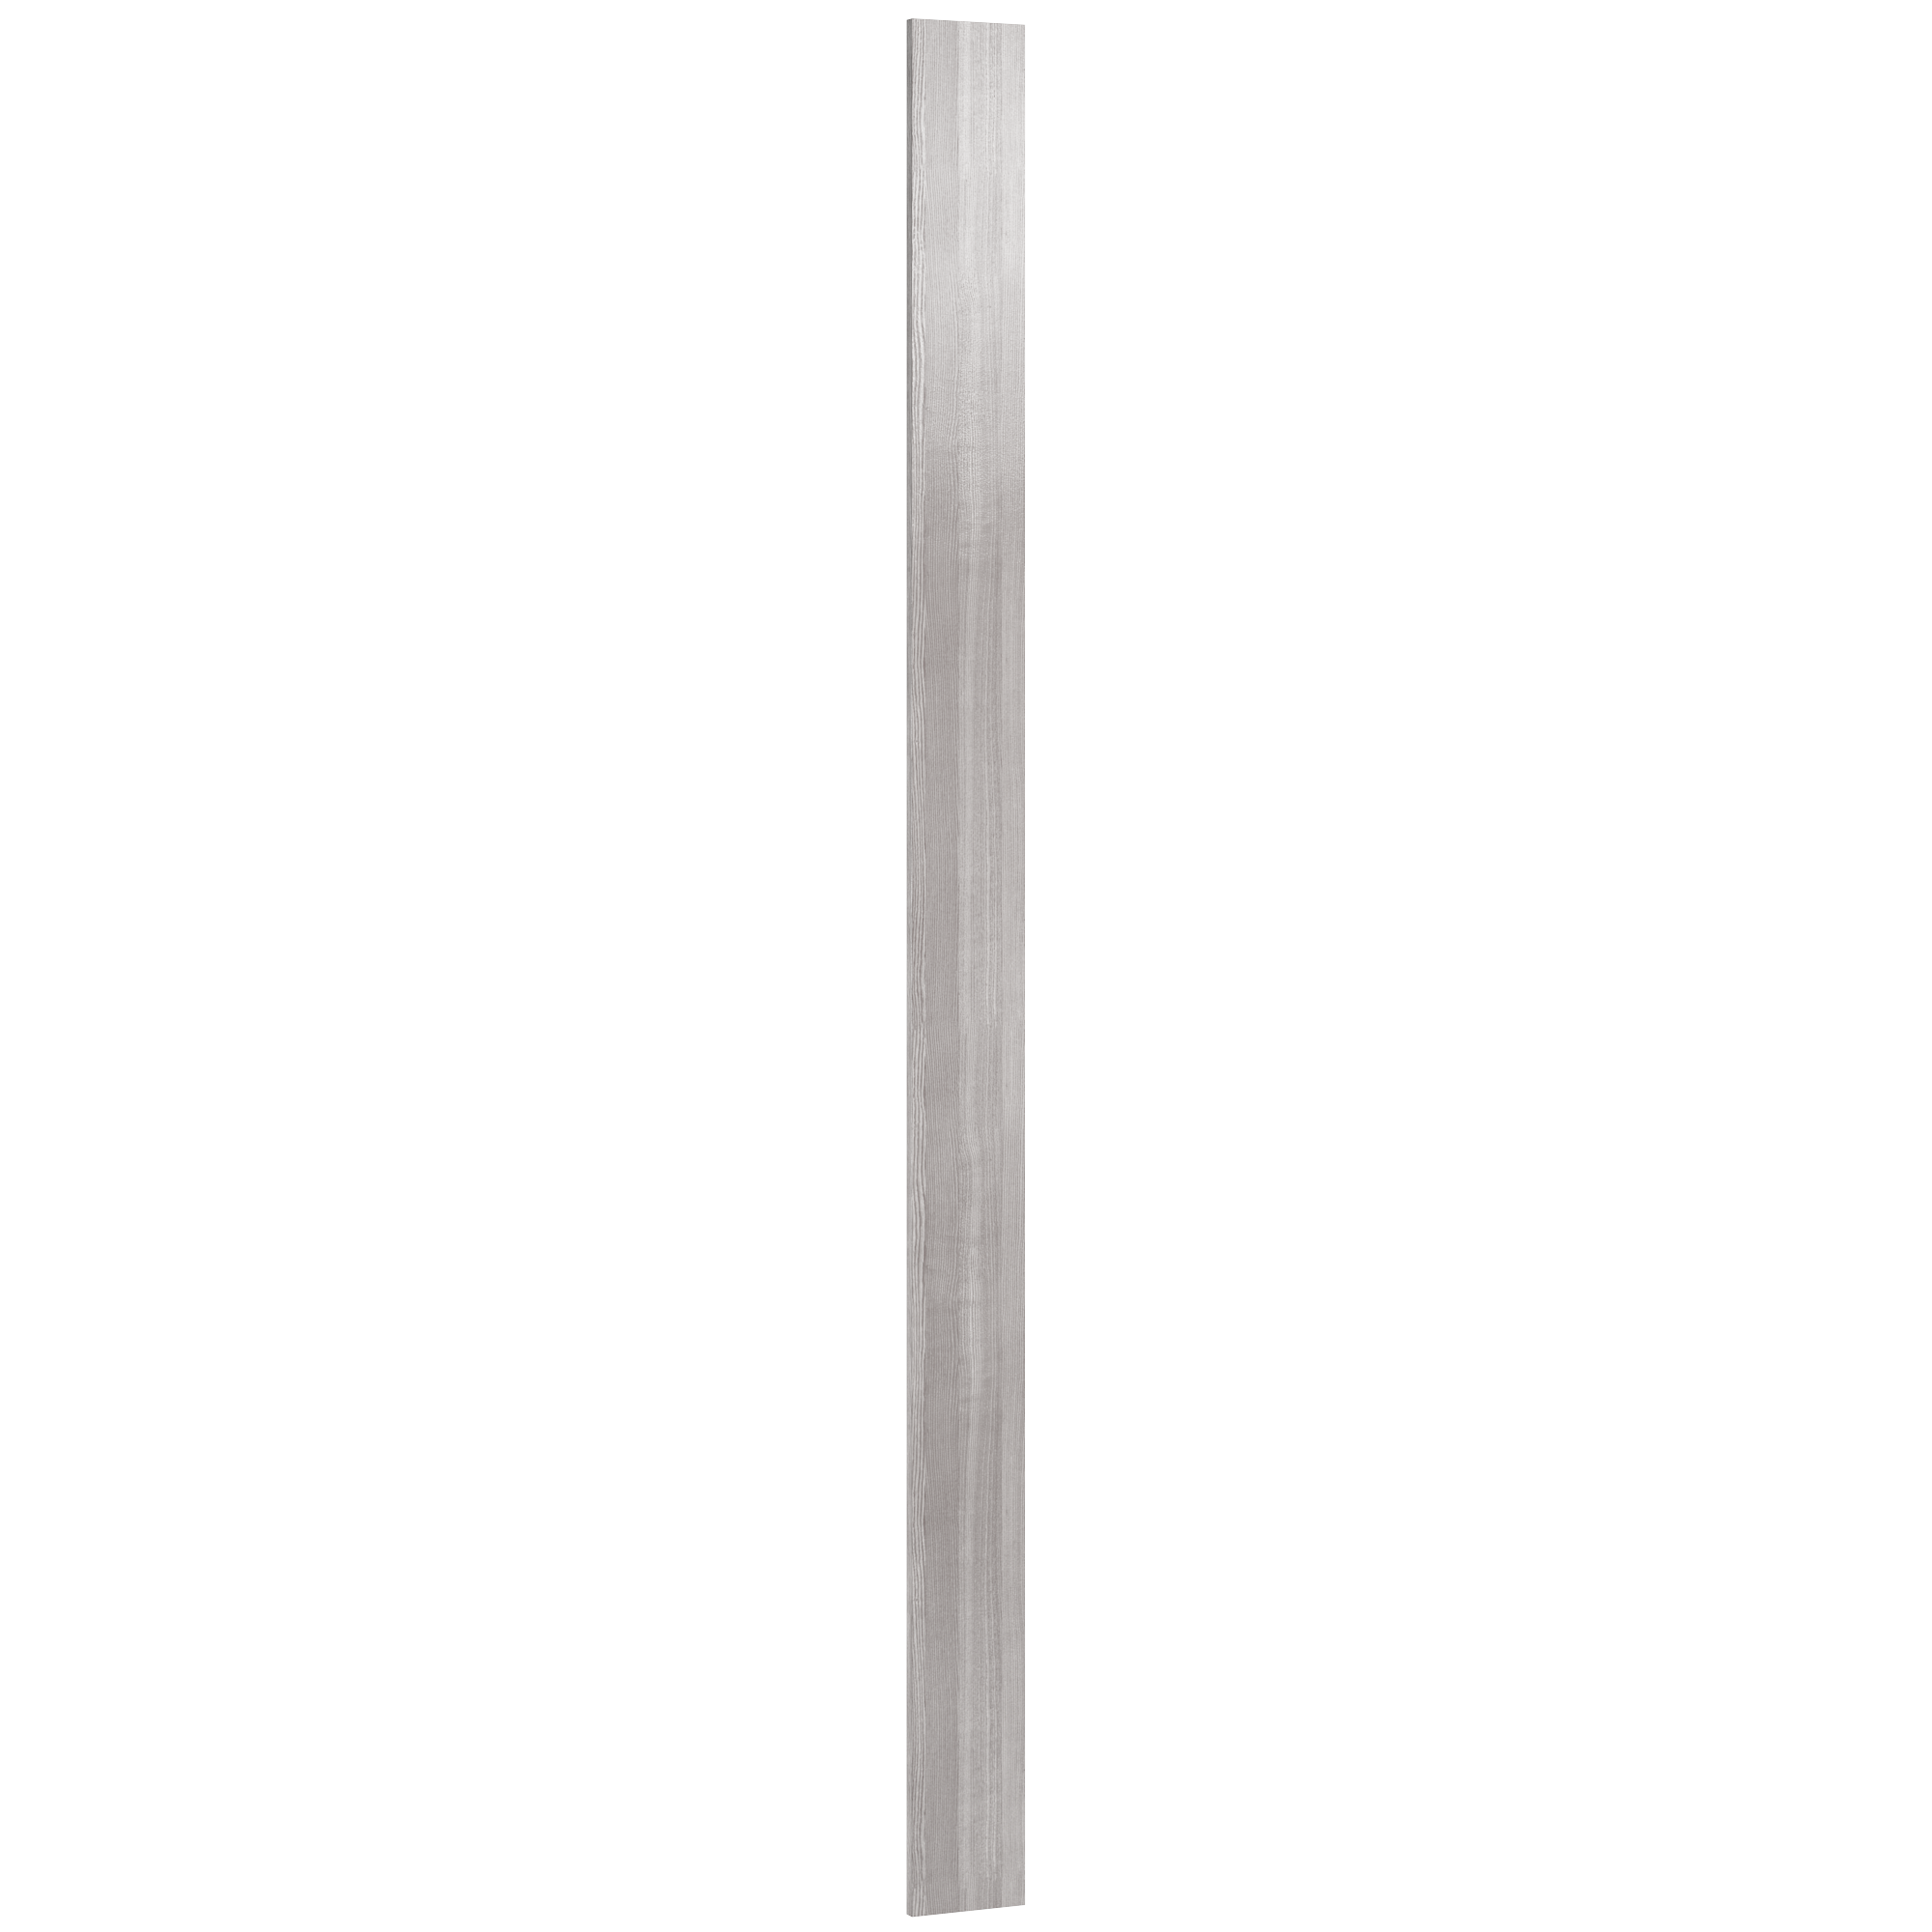 Porte colonne largeur 15 cm - STORM 0